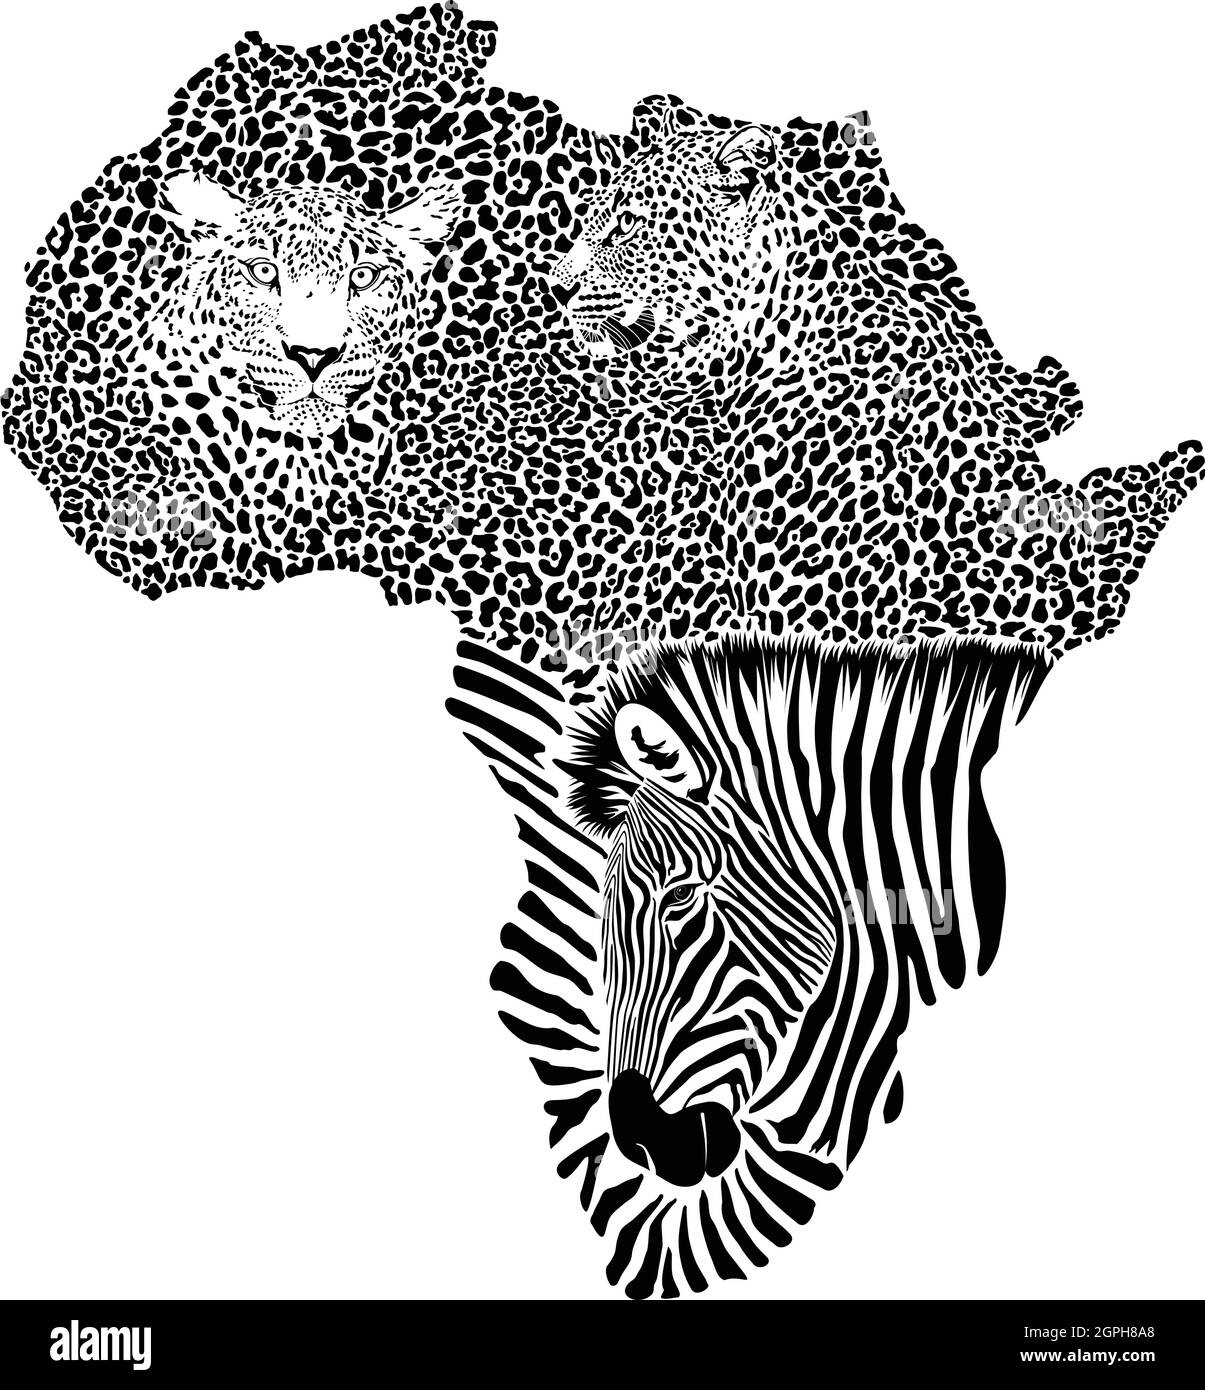 Zebra et Leopards sur la carte de l'Afrique Illustration de Vecteur